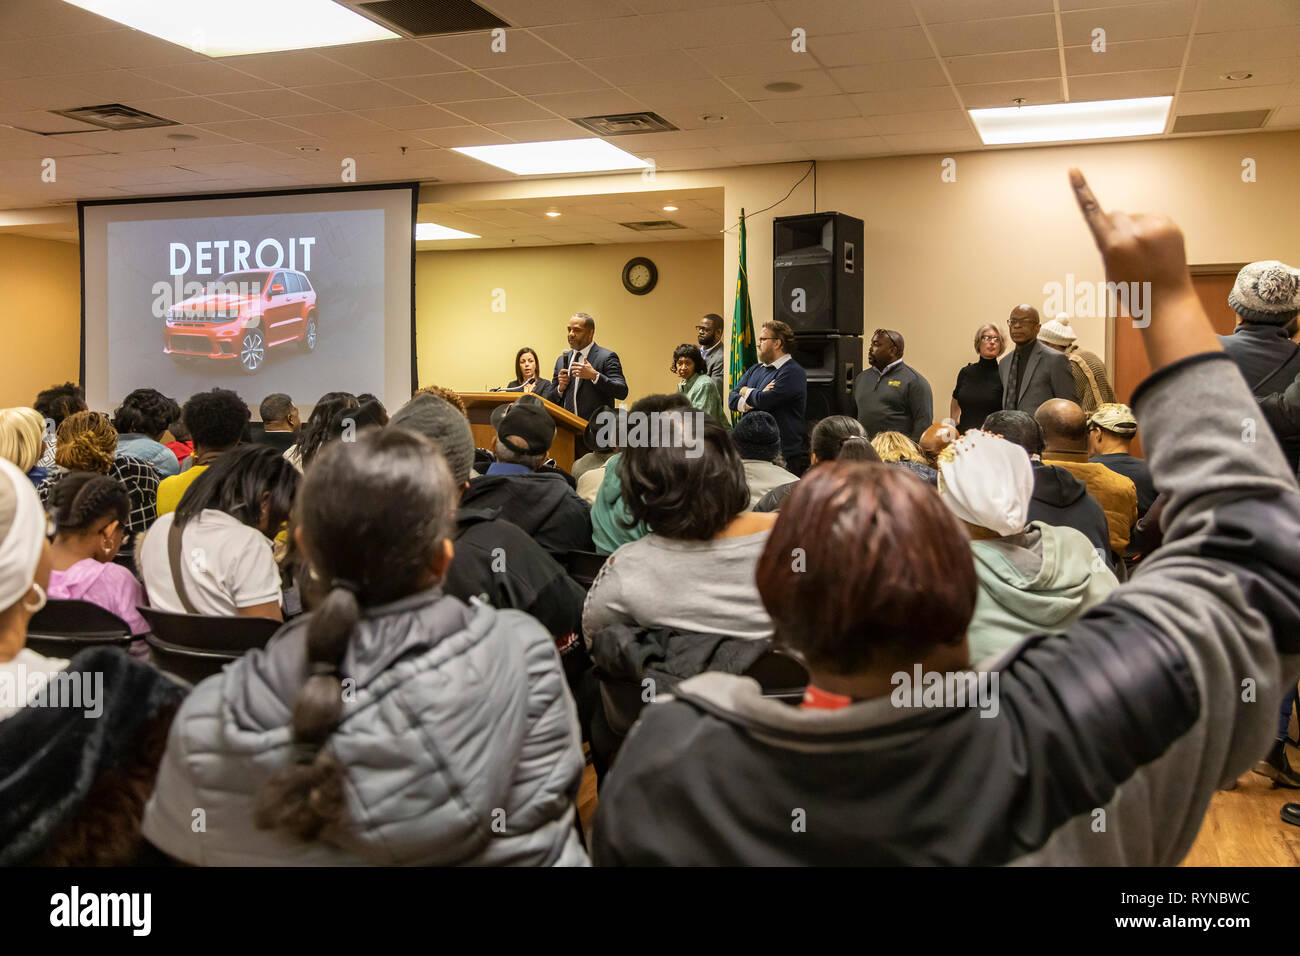 Detroit, Michigan - Des centaines entassés dans une salle de l'union d'entendre parler de Fiat Chrysler Automobiles" visant à construire une nouvelle usine de montage d'automobiles dans un pays à faible revenu Banque D'Images